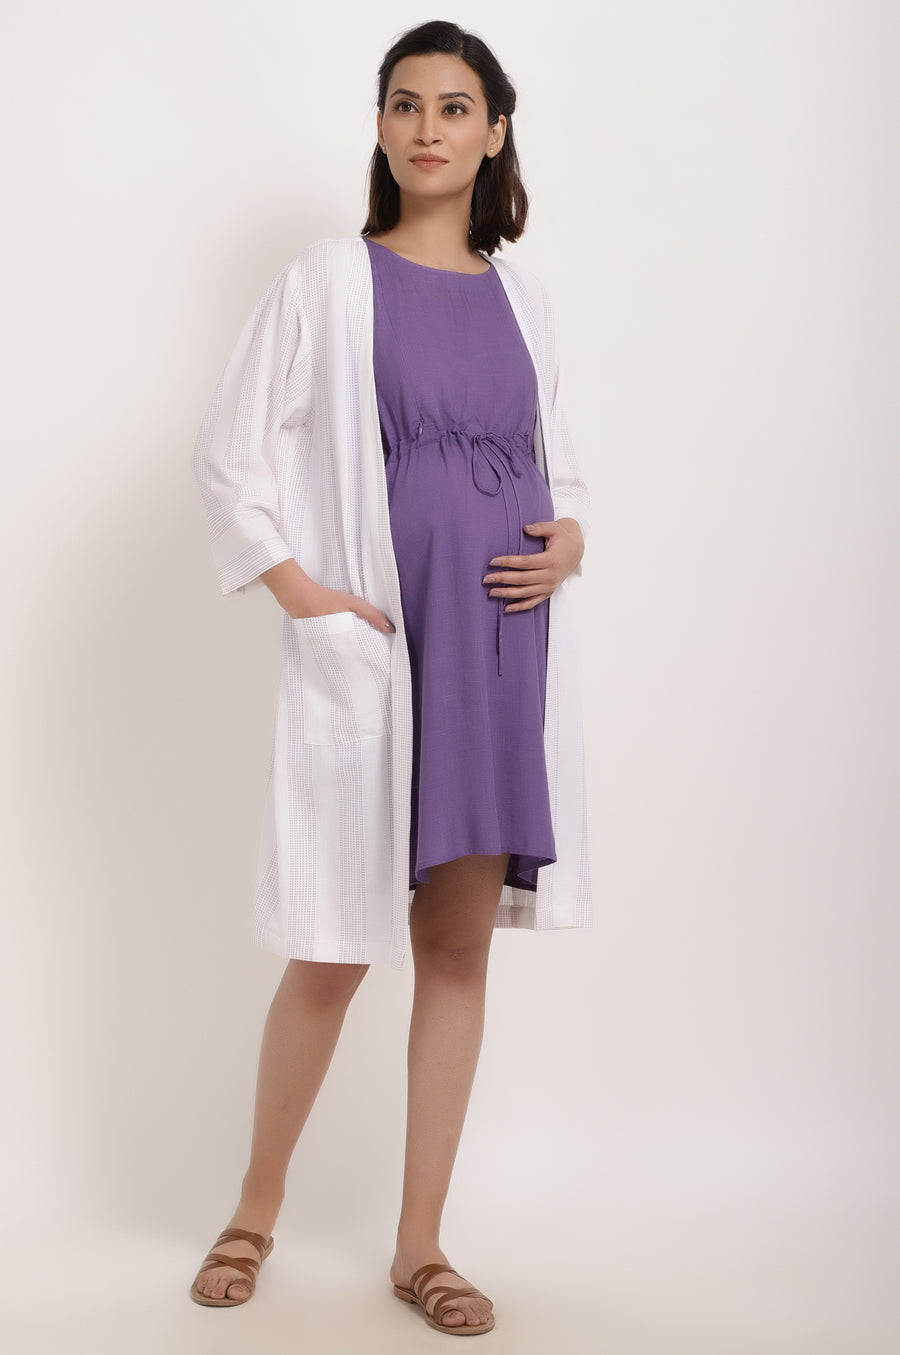 stylish maternity wear